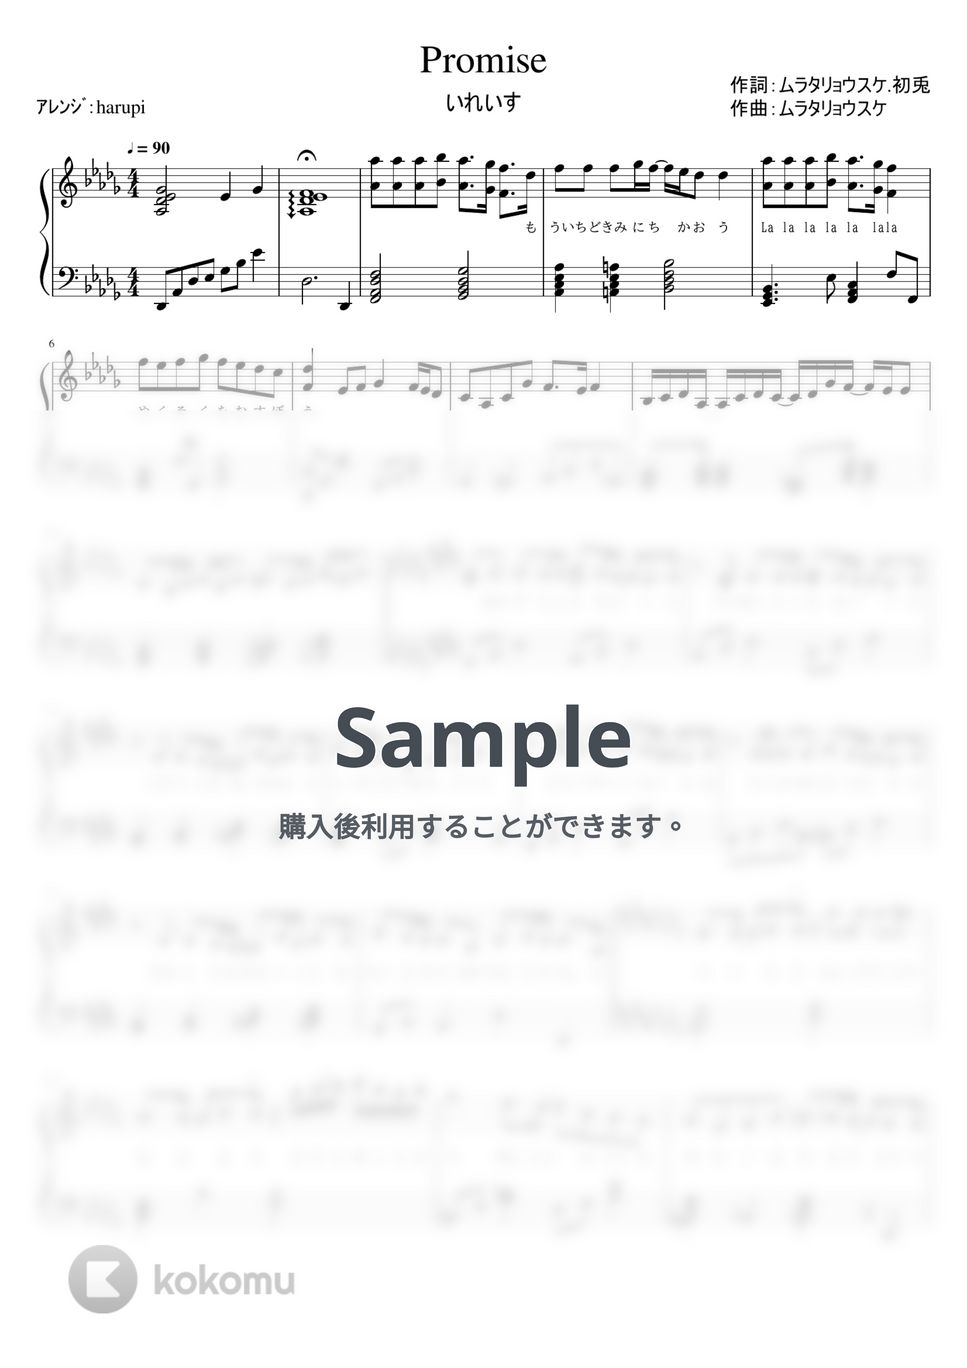 いれいす - Promise (いれいす,ピアノ,Promise) by harupi